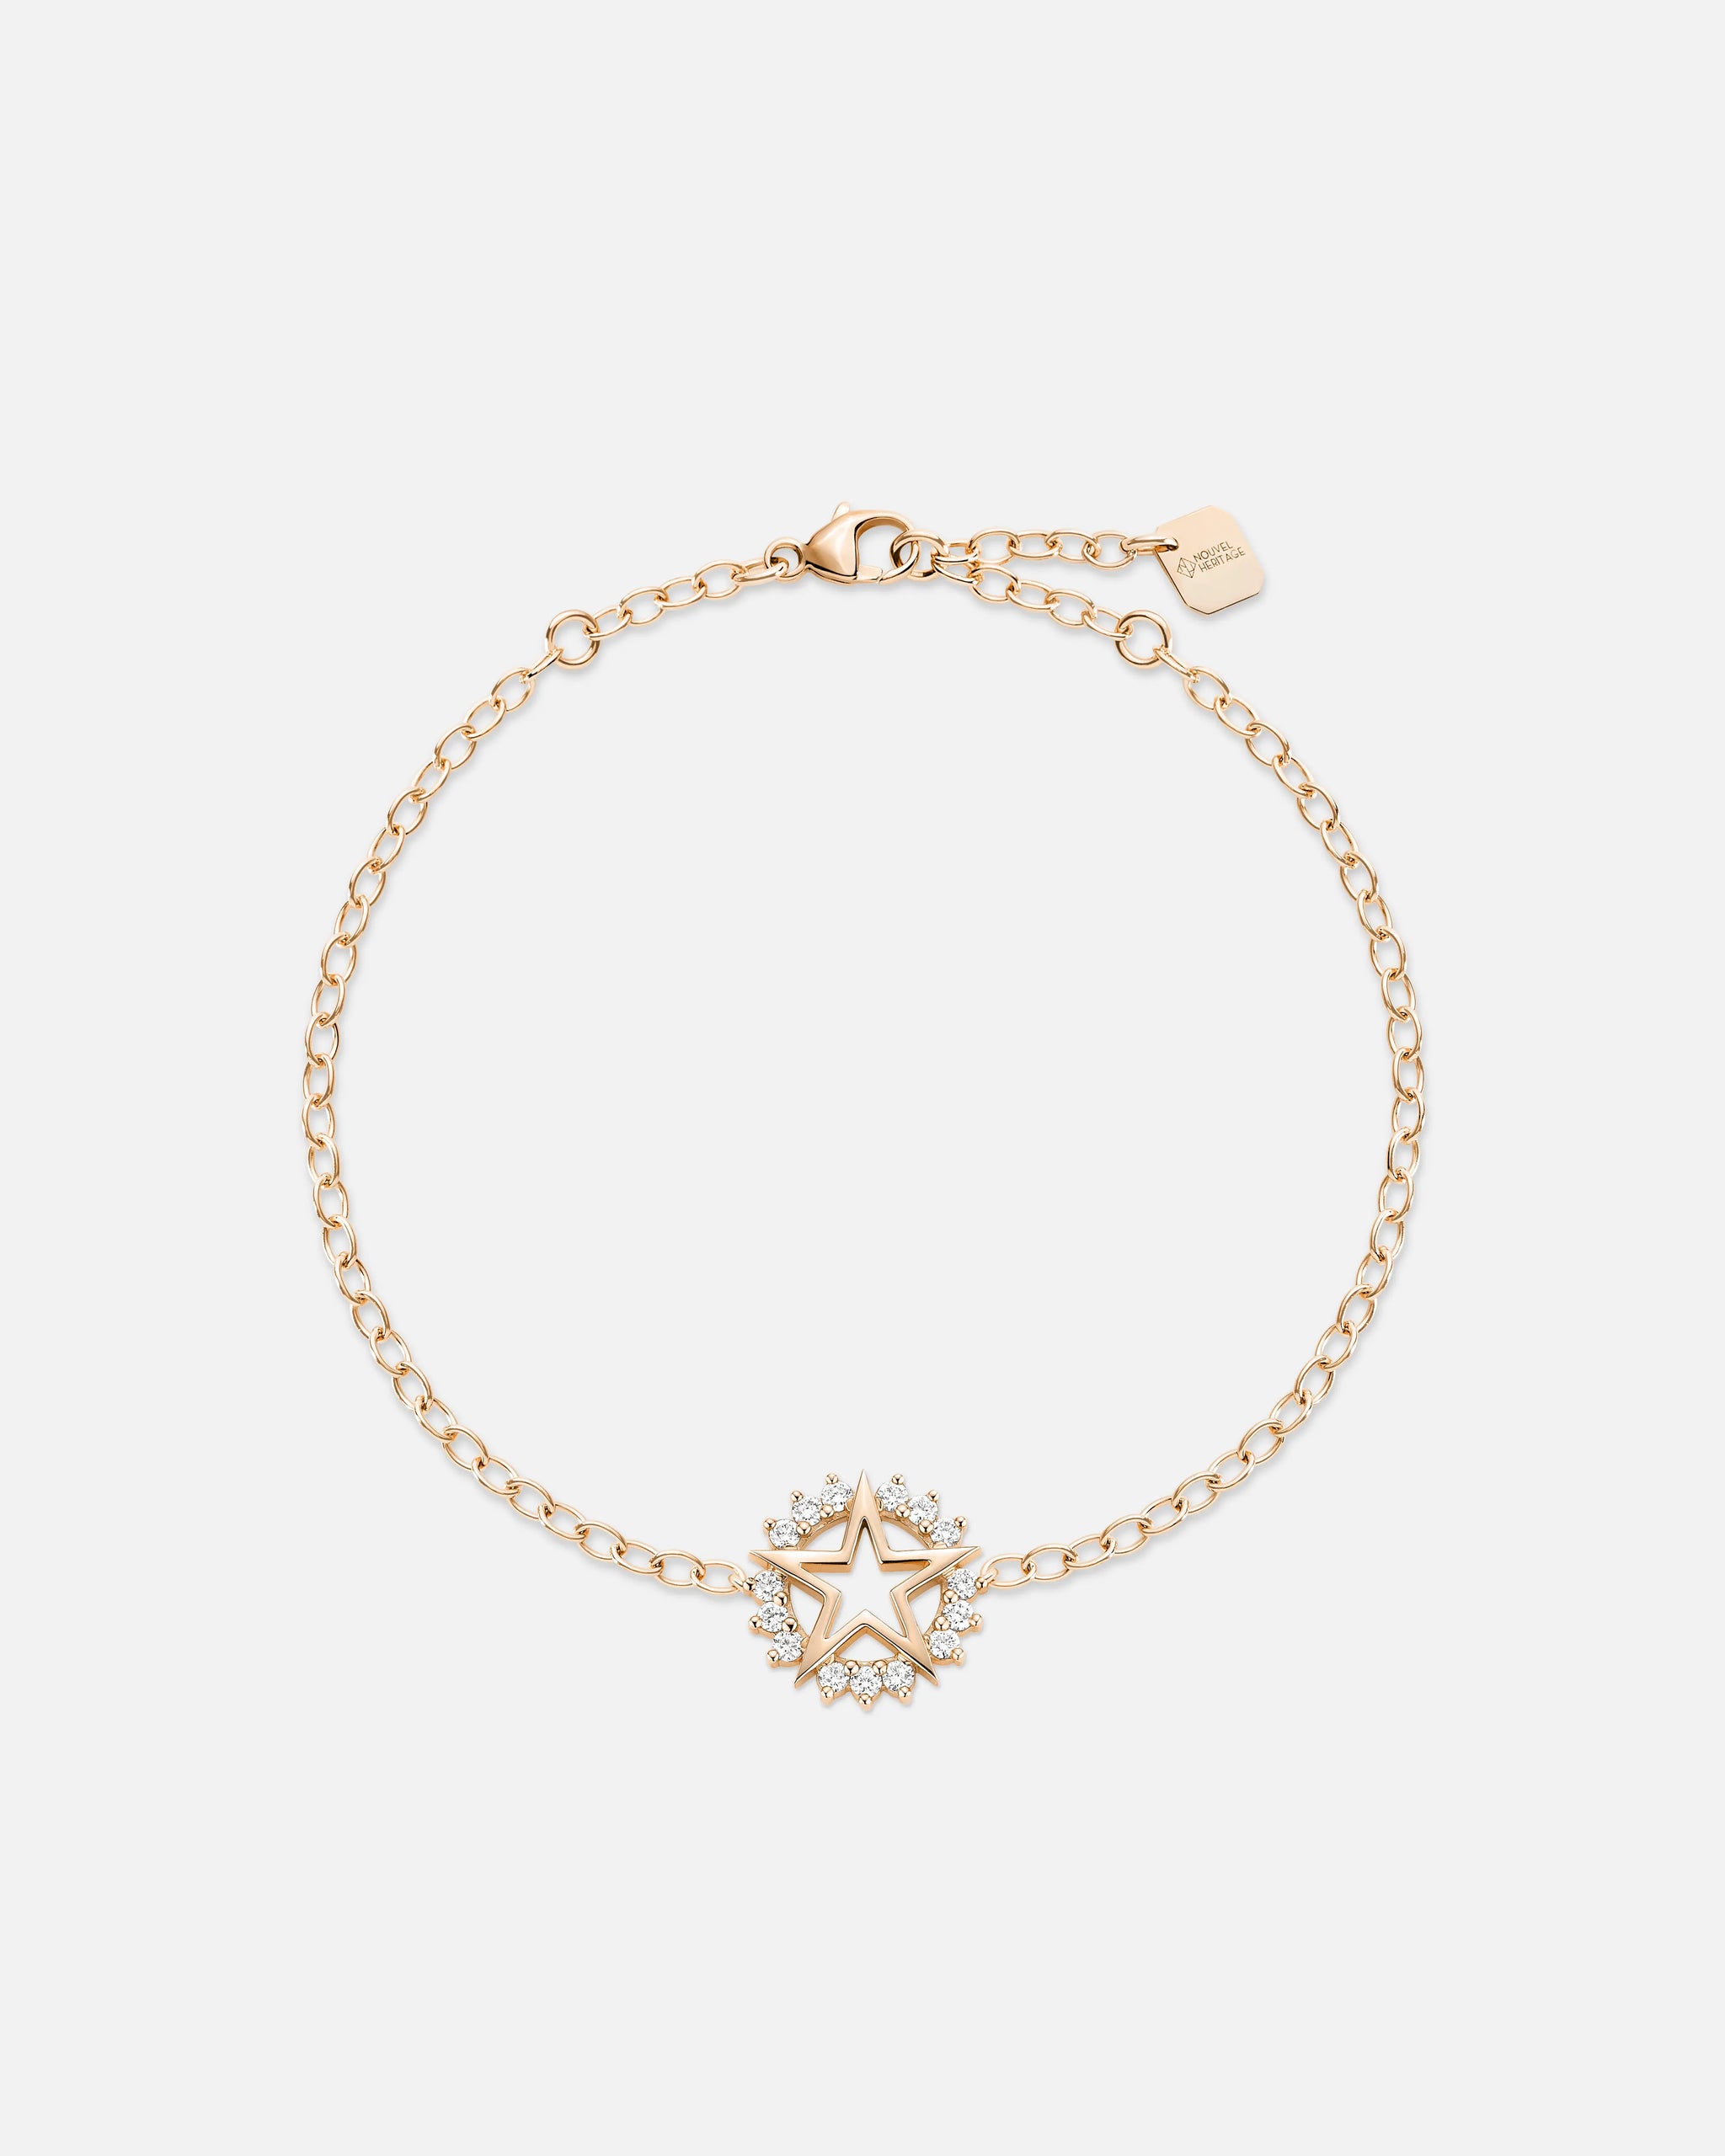 Medium Star Bracelet in Rose Gold - 1 - Nouvel Heritage